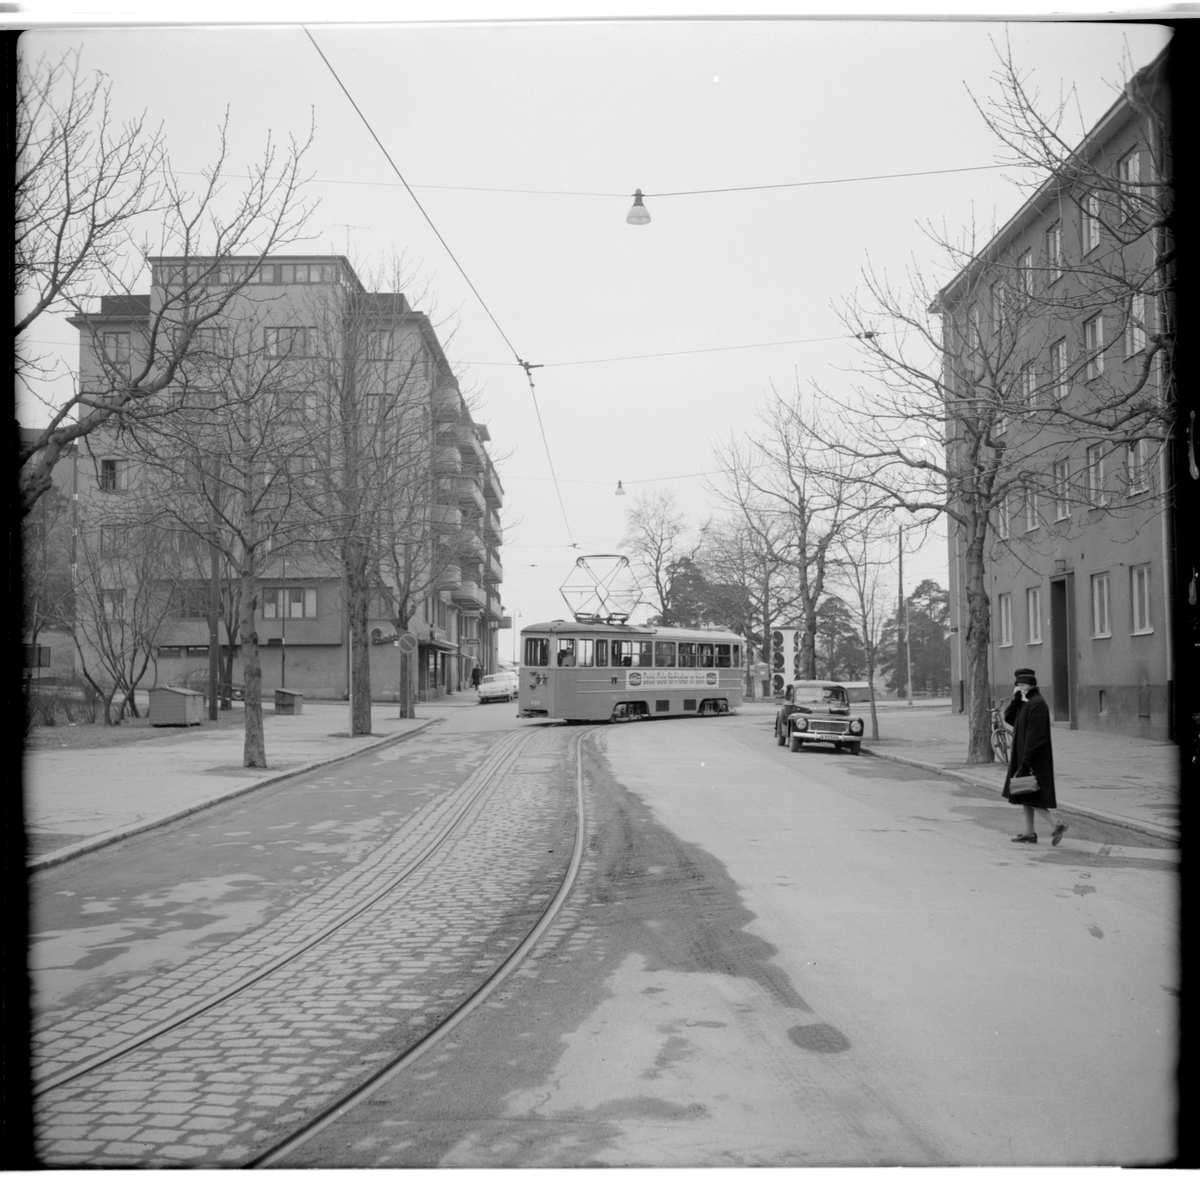 Aktiebolaget Stockholms Spårvägar, SS A25 429 "mustang" linje 2 Fredhäll - Karlaplan vid sista kurvan in till ändhållsplats, Fredhäll.